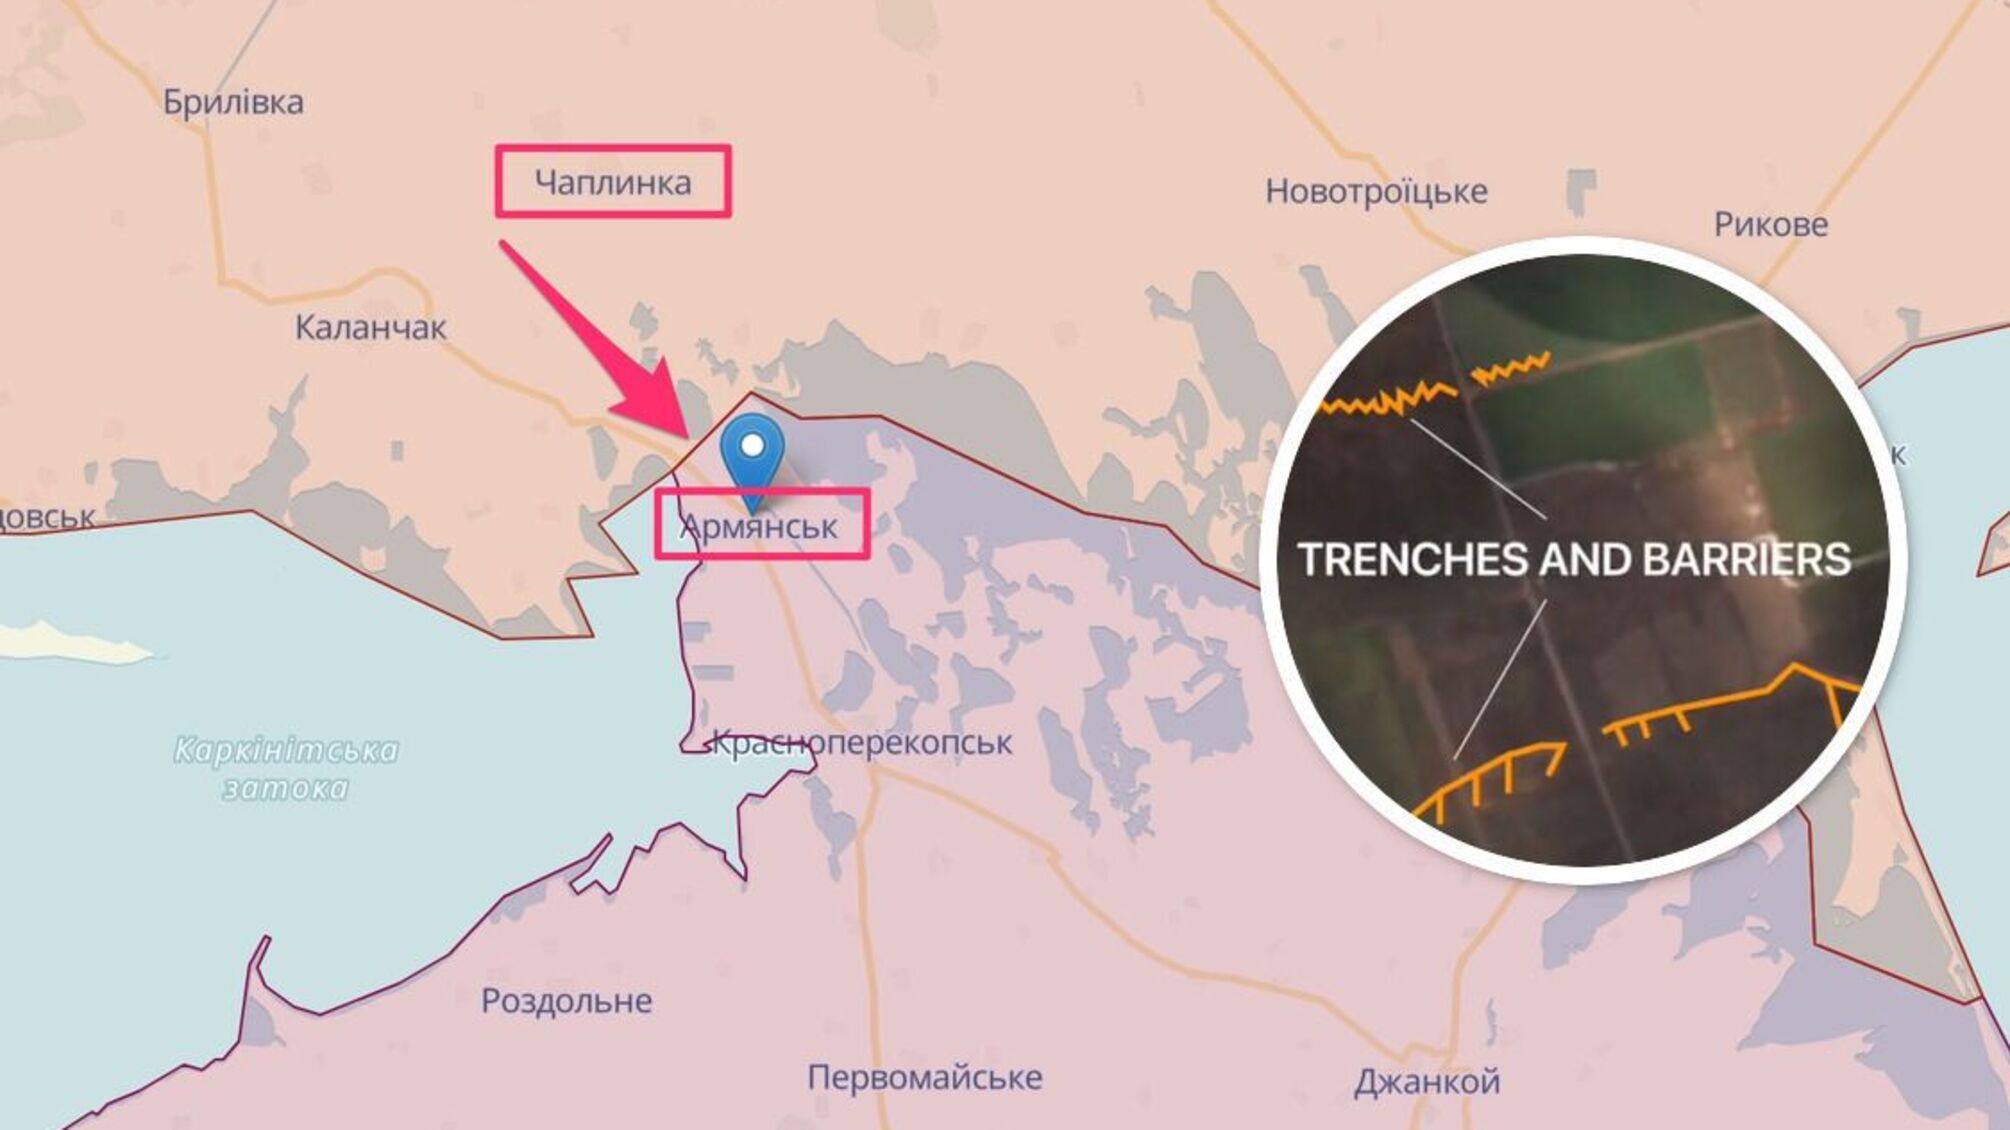 Враг дополнительно укрепляет границу Херсонской области и Крыма